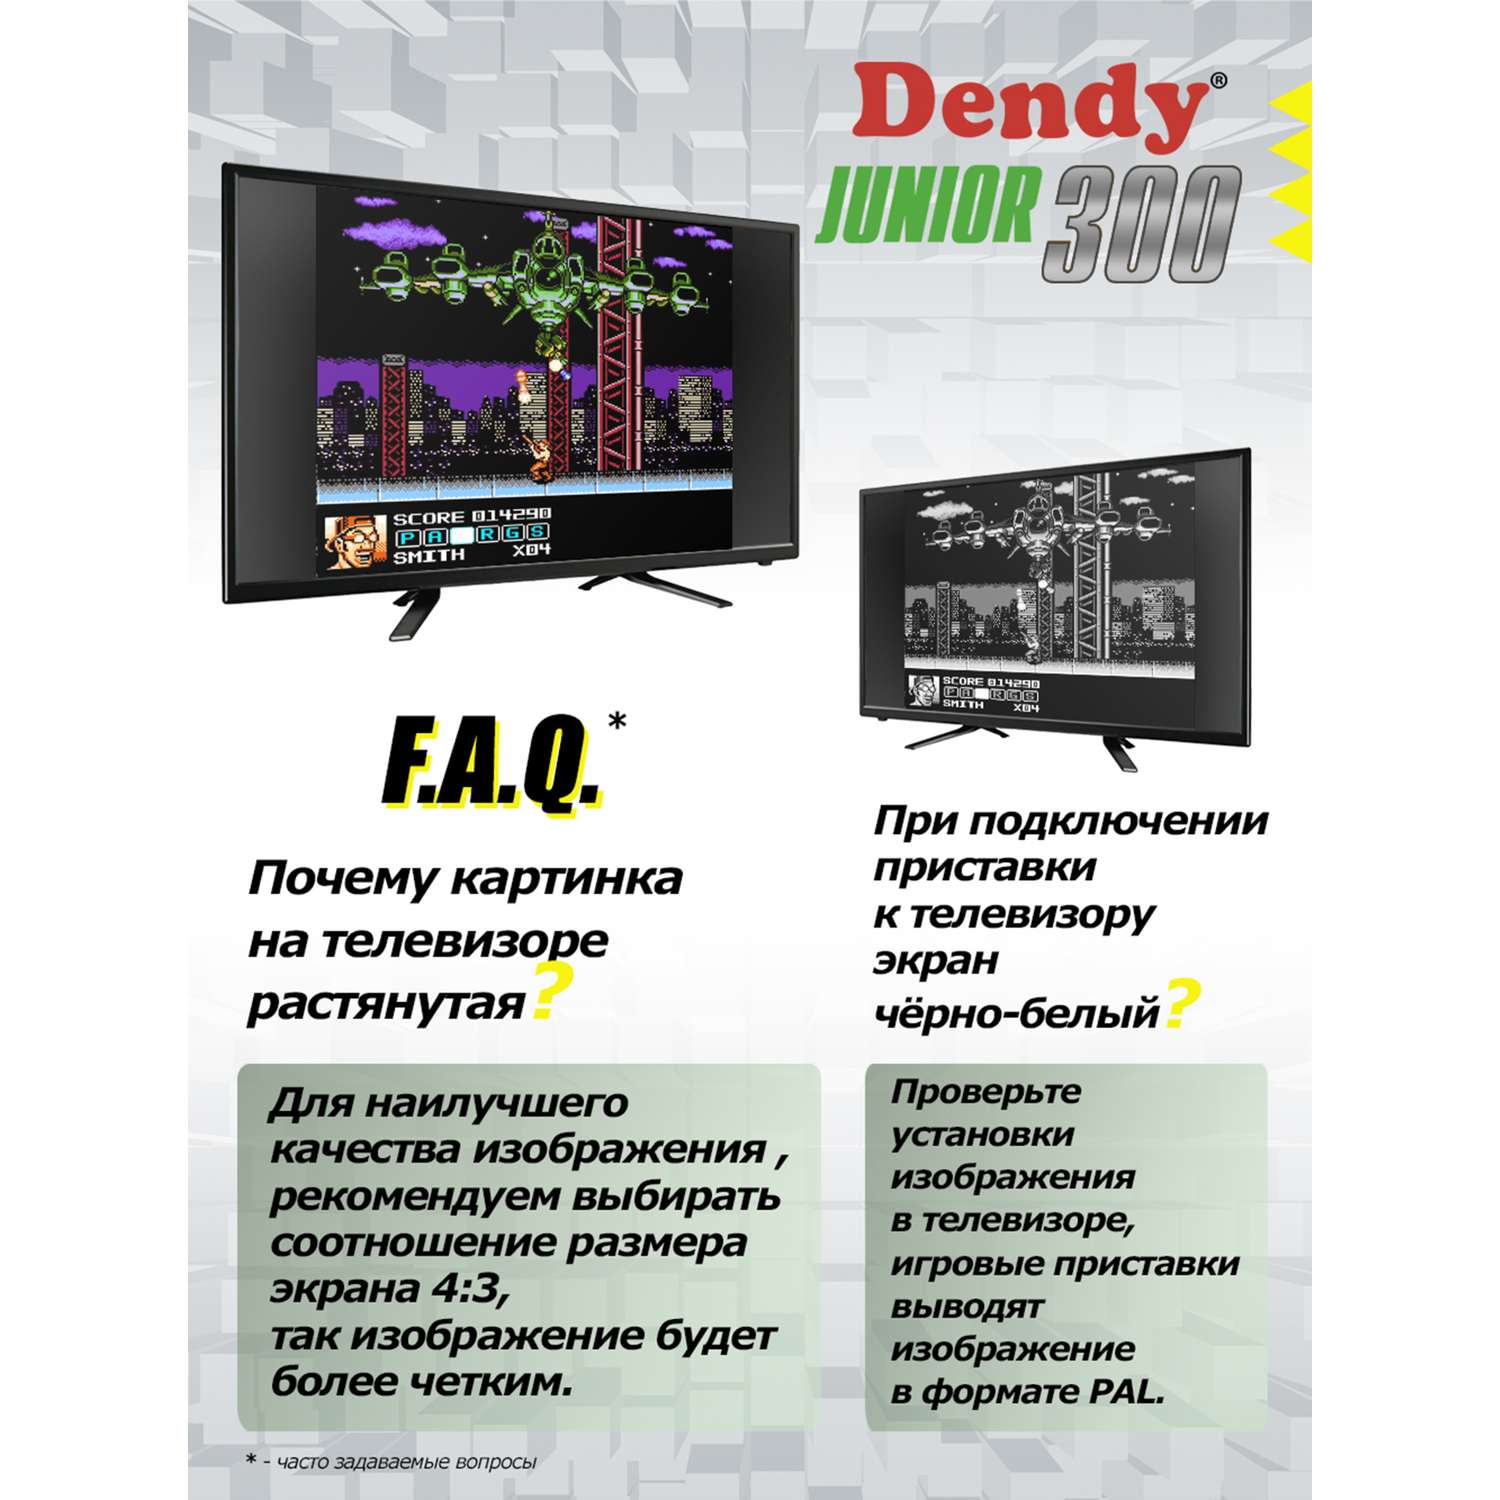 Игровая приставка Dendy Junior 300 встроенных игр (8-бит) - фото 8